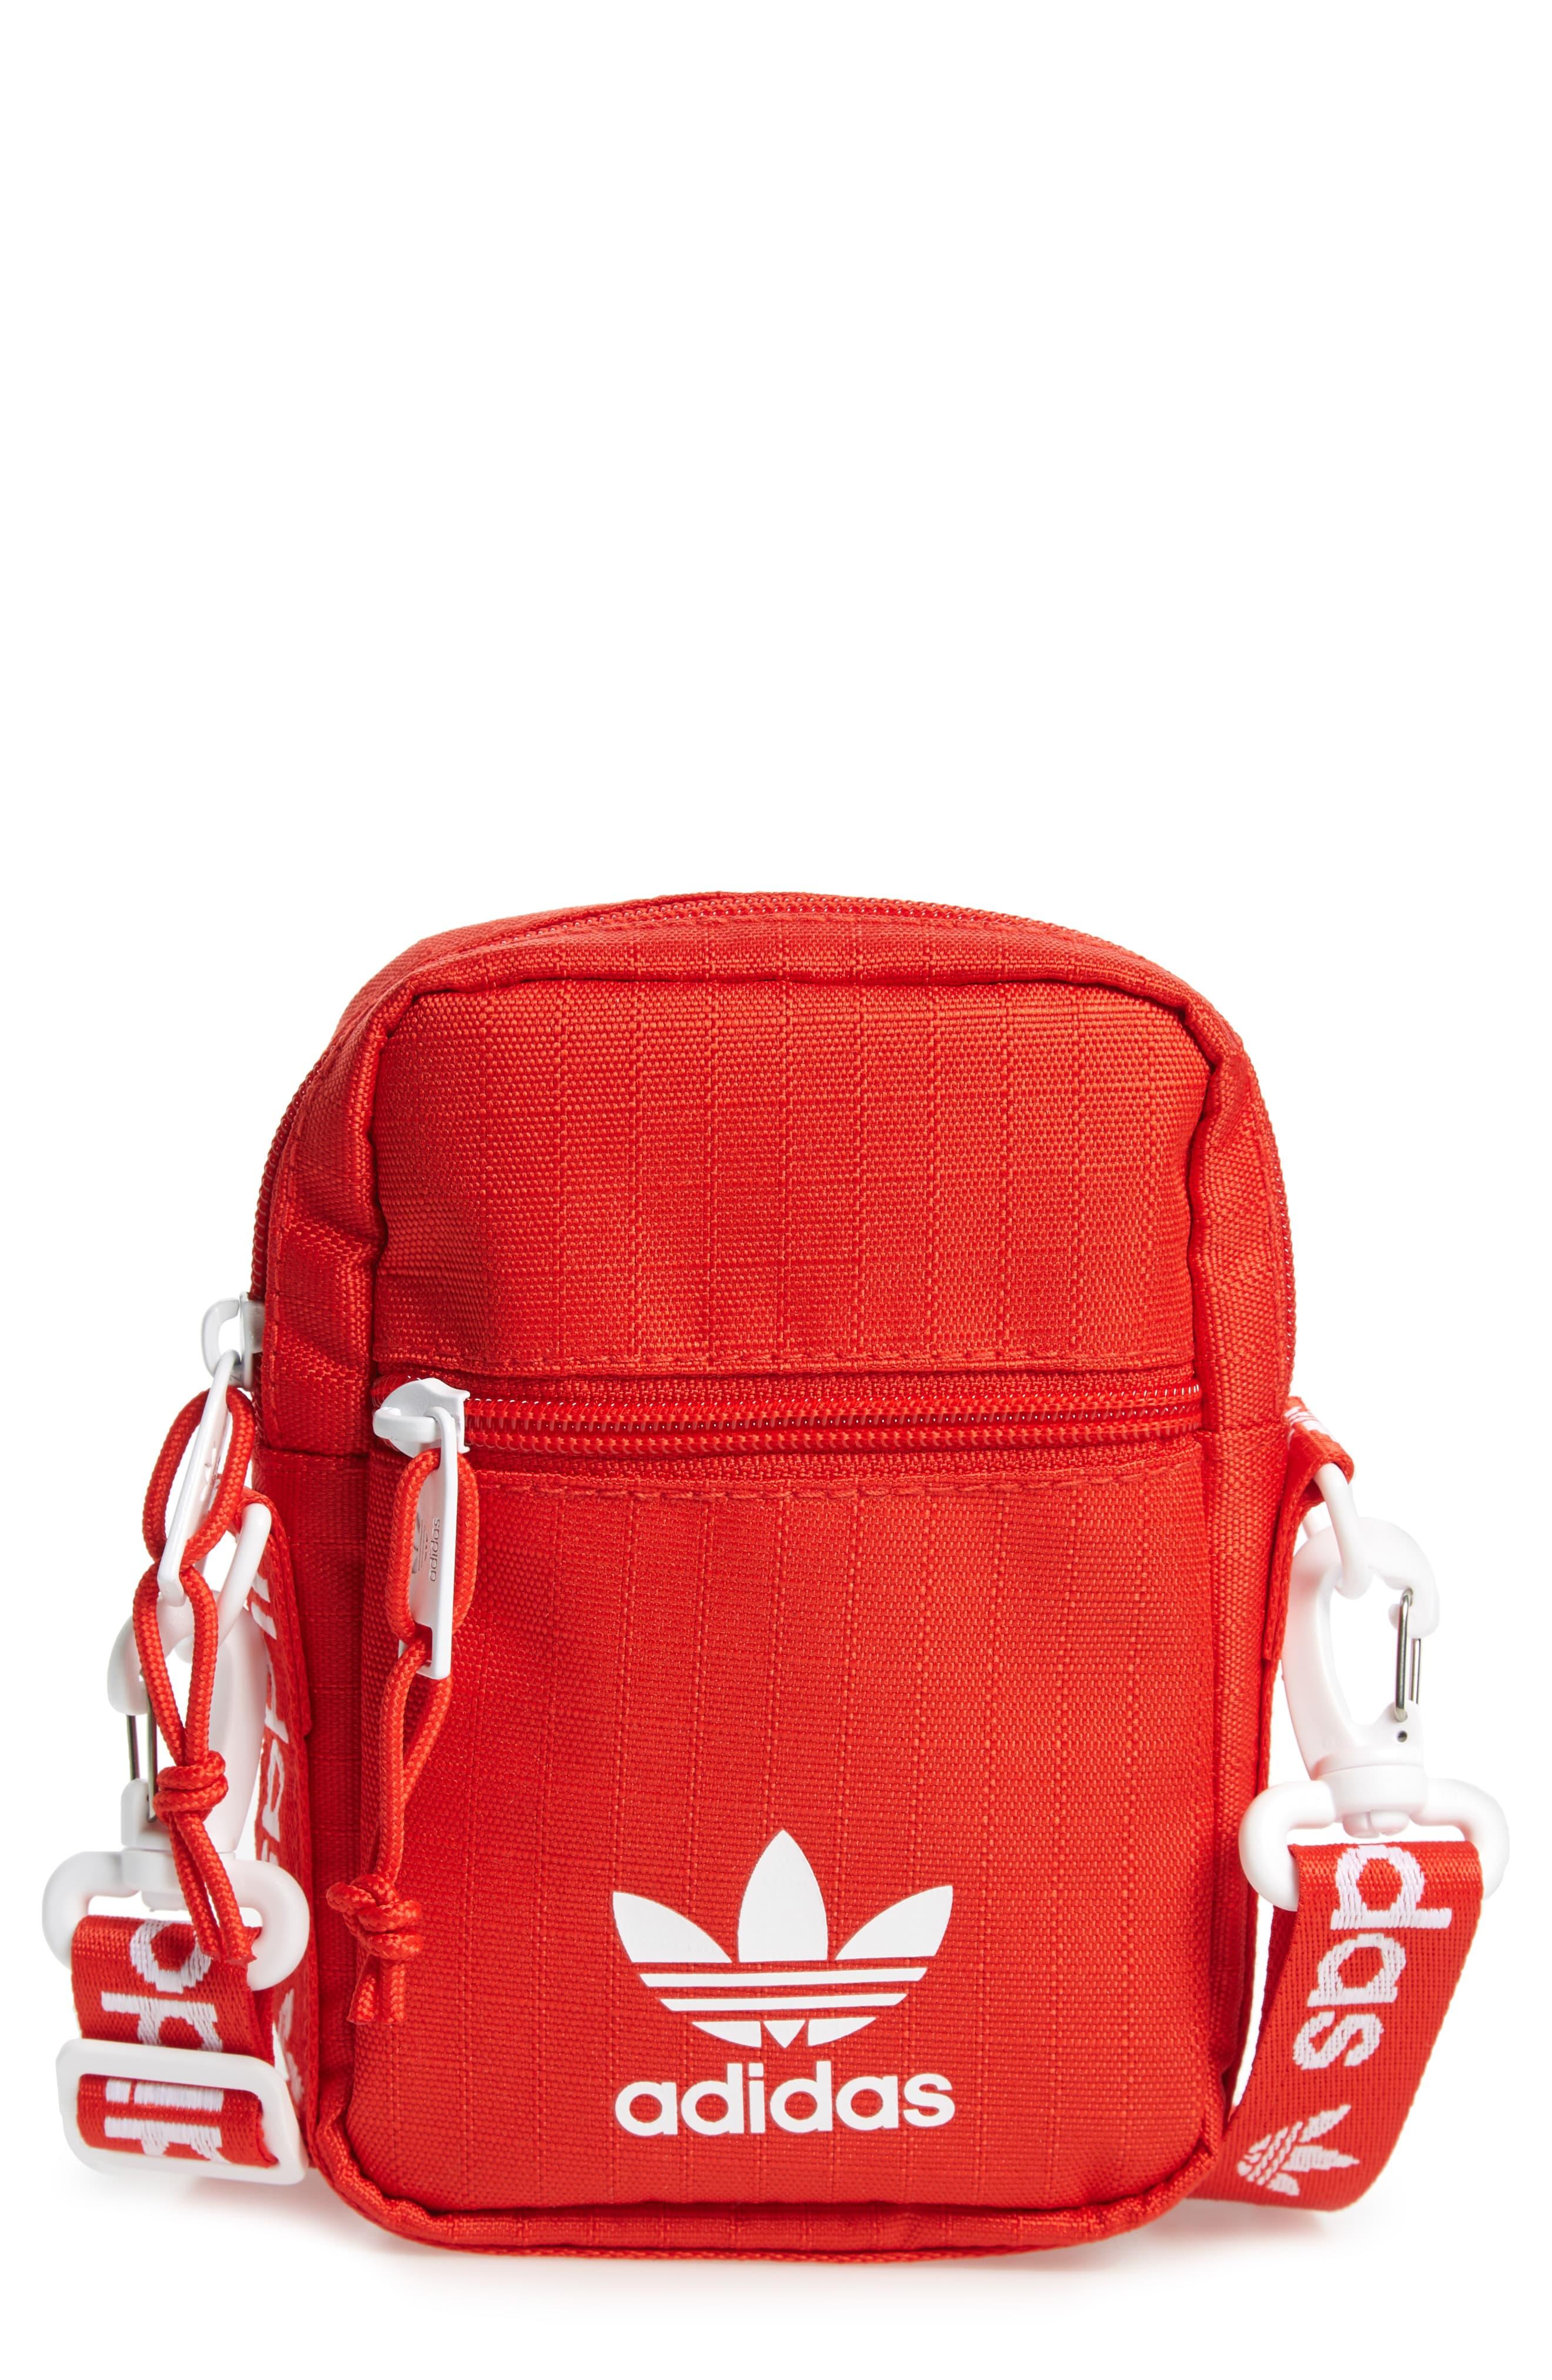 adidas Logo Belt Bag in Red - Lyst